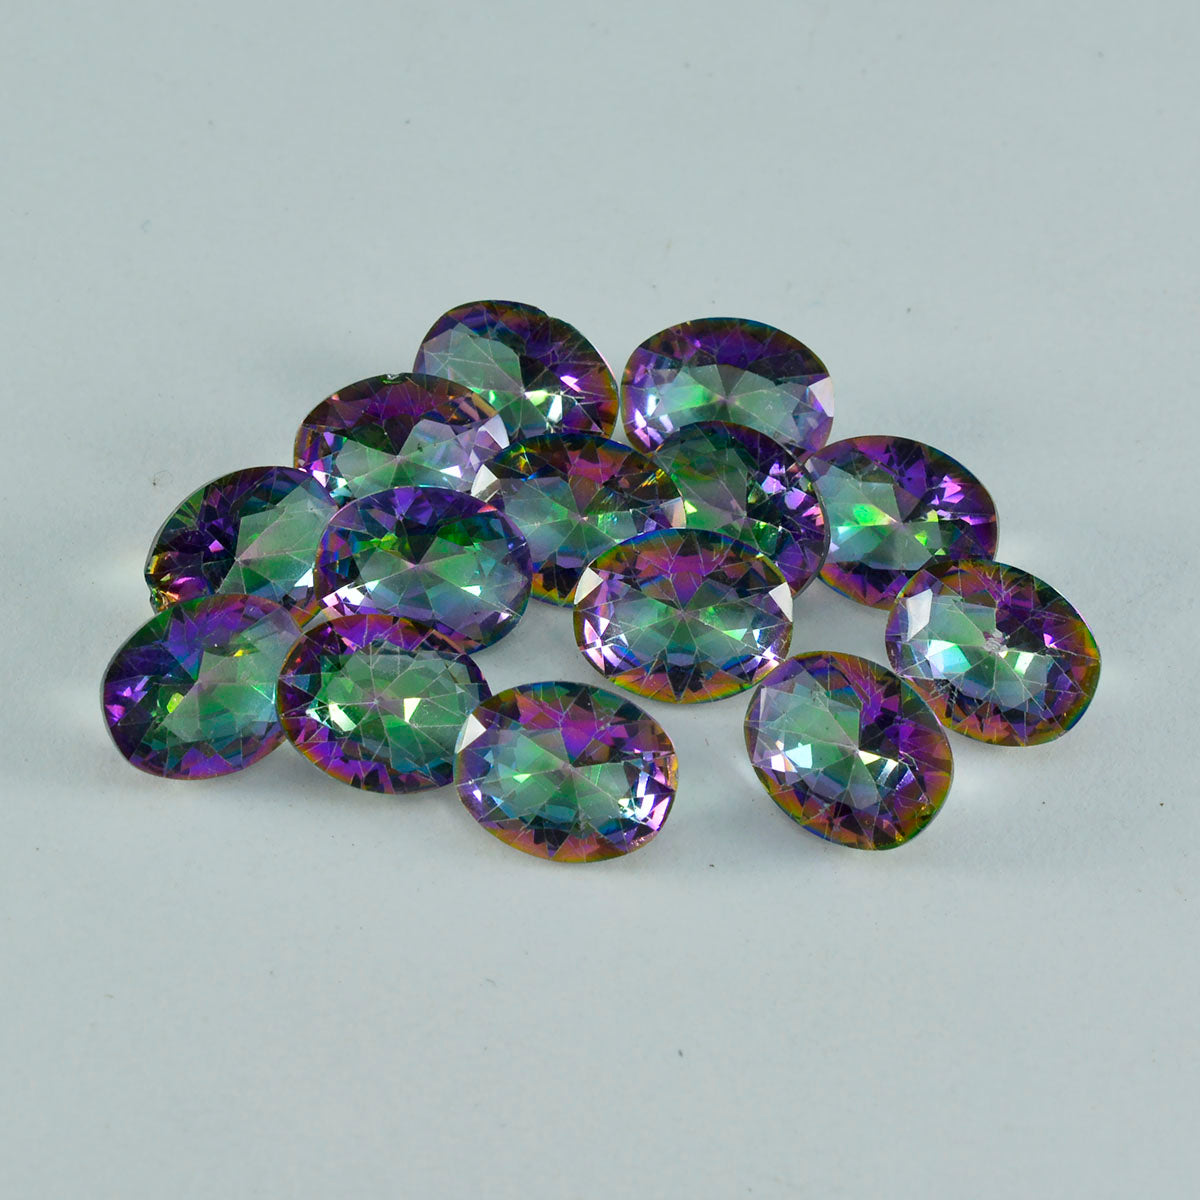 riyogems 1 шт. разноцветный мистический кварц ограненный 8x10 мм овальной формы, привлекательные качественные драгоценные камни